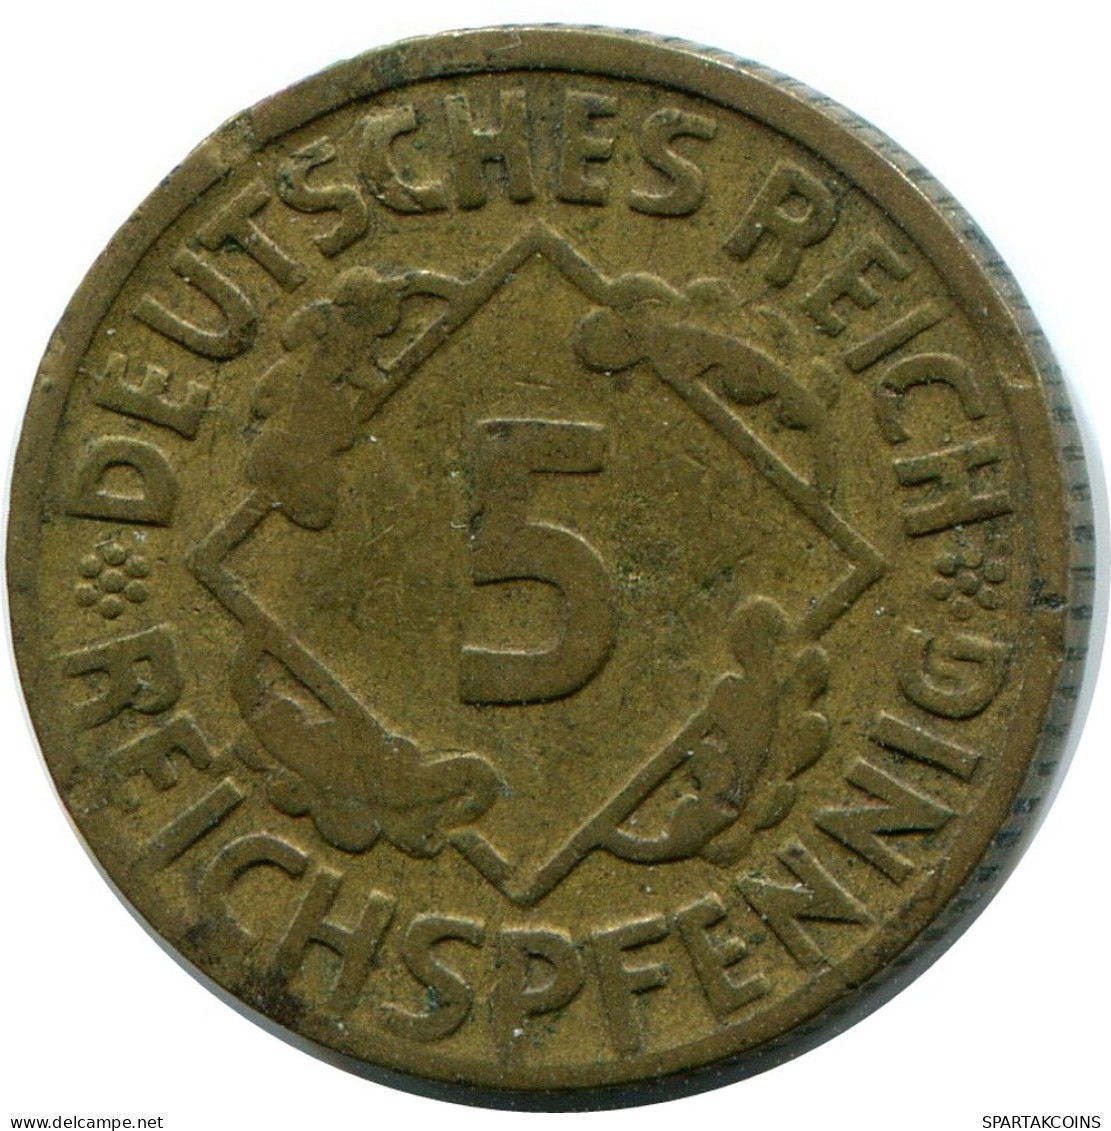 5 REICHSPFENNIG 1924 D ALEMANIA Moneda GERMANY #DB870.E - 5 Rentenpfennig & 5 Reichspfennig